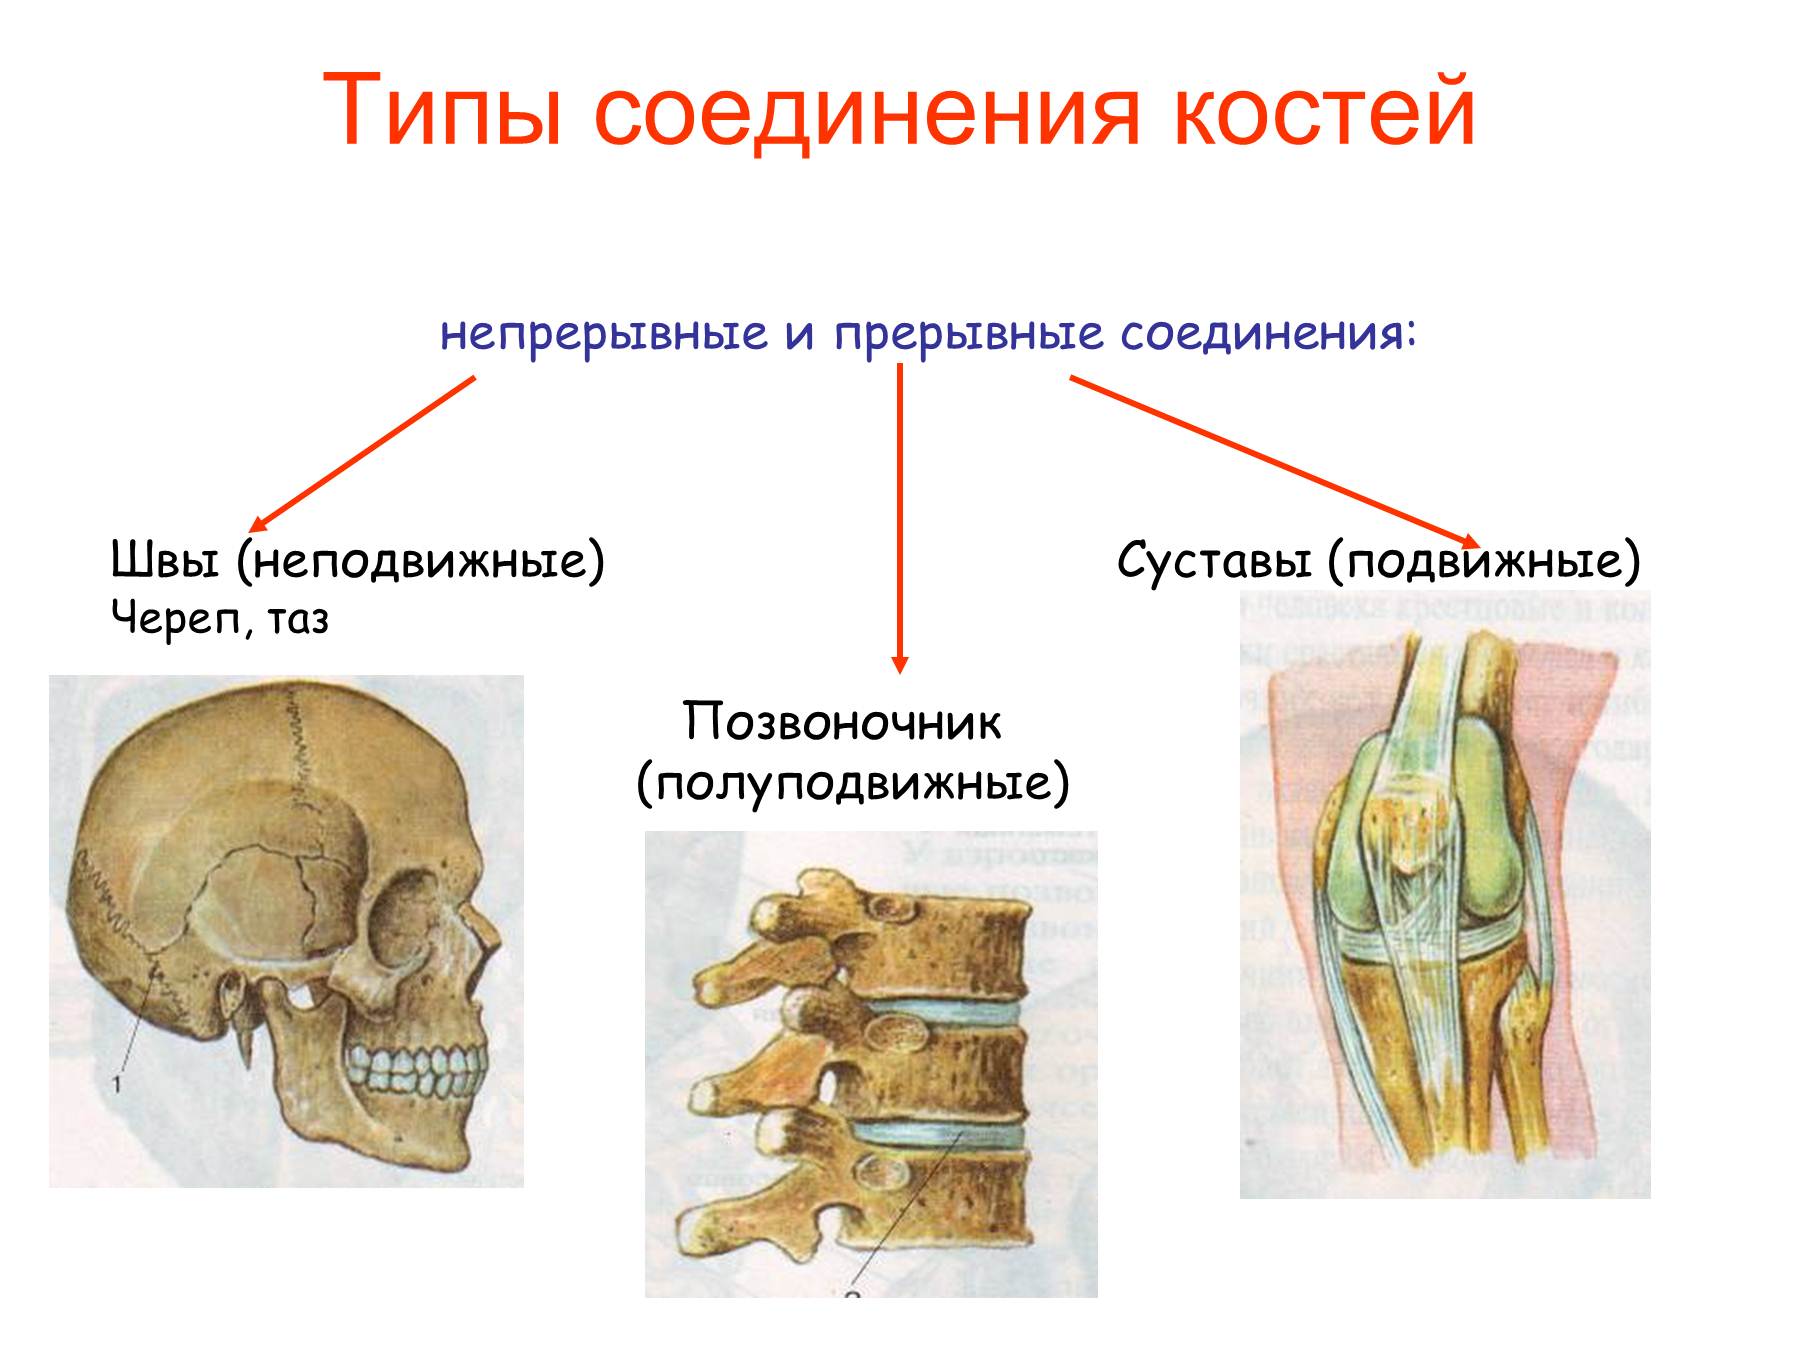 Правильное соединение костей. Соединение костей человека непрерывные прерывные. Подвижное полуподвижное и неподвижное соединение костей. Соединения костей непрерывные прерывные симфизы. Неподвижные полуподвижные и подвижные соединения костей.